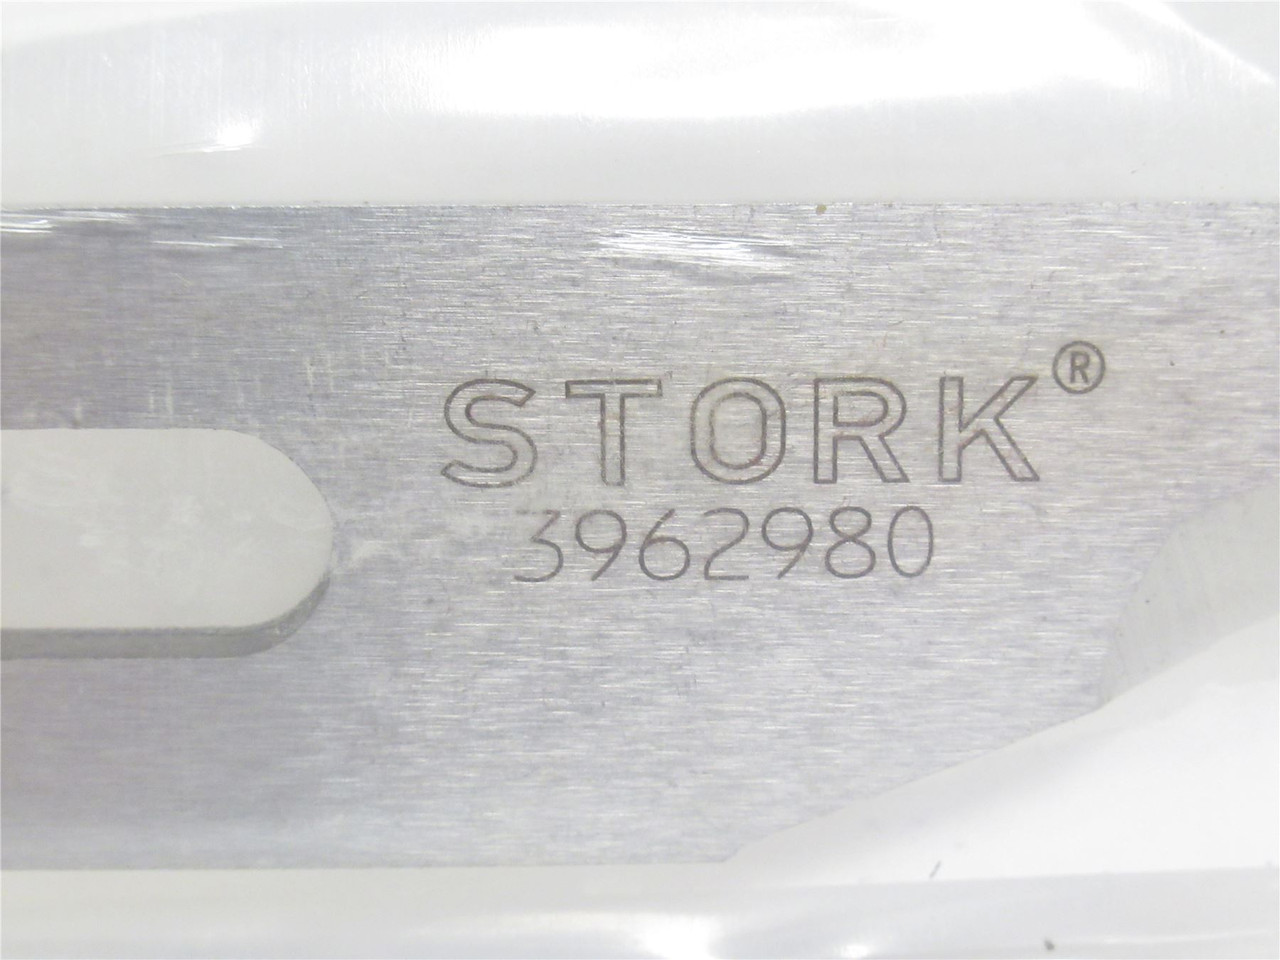 Stork 3962980; Start Blade